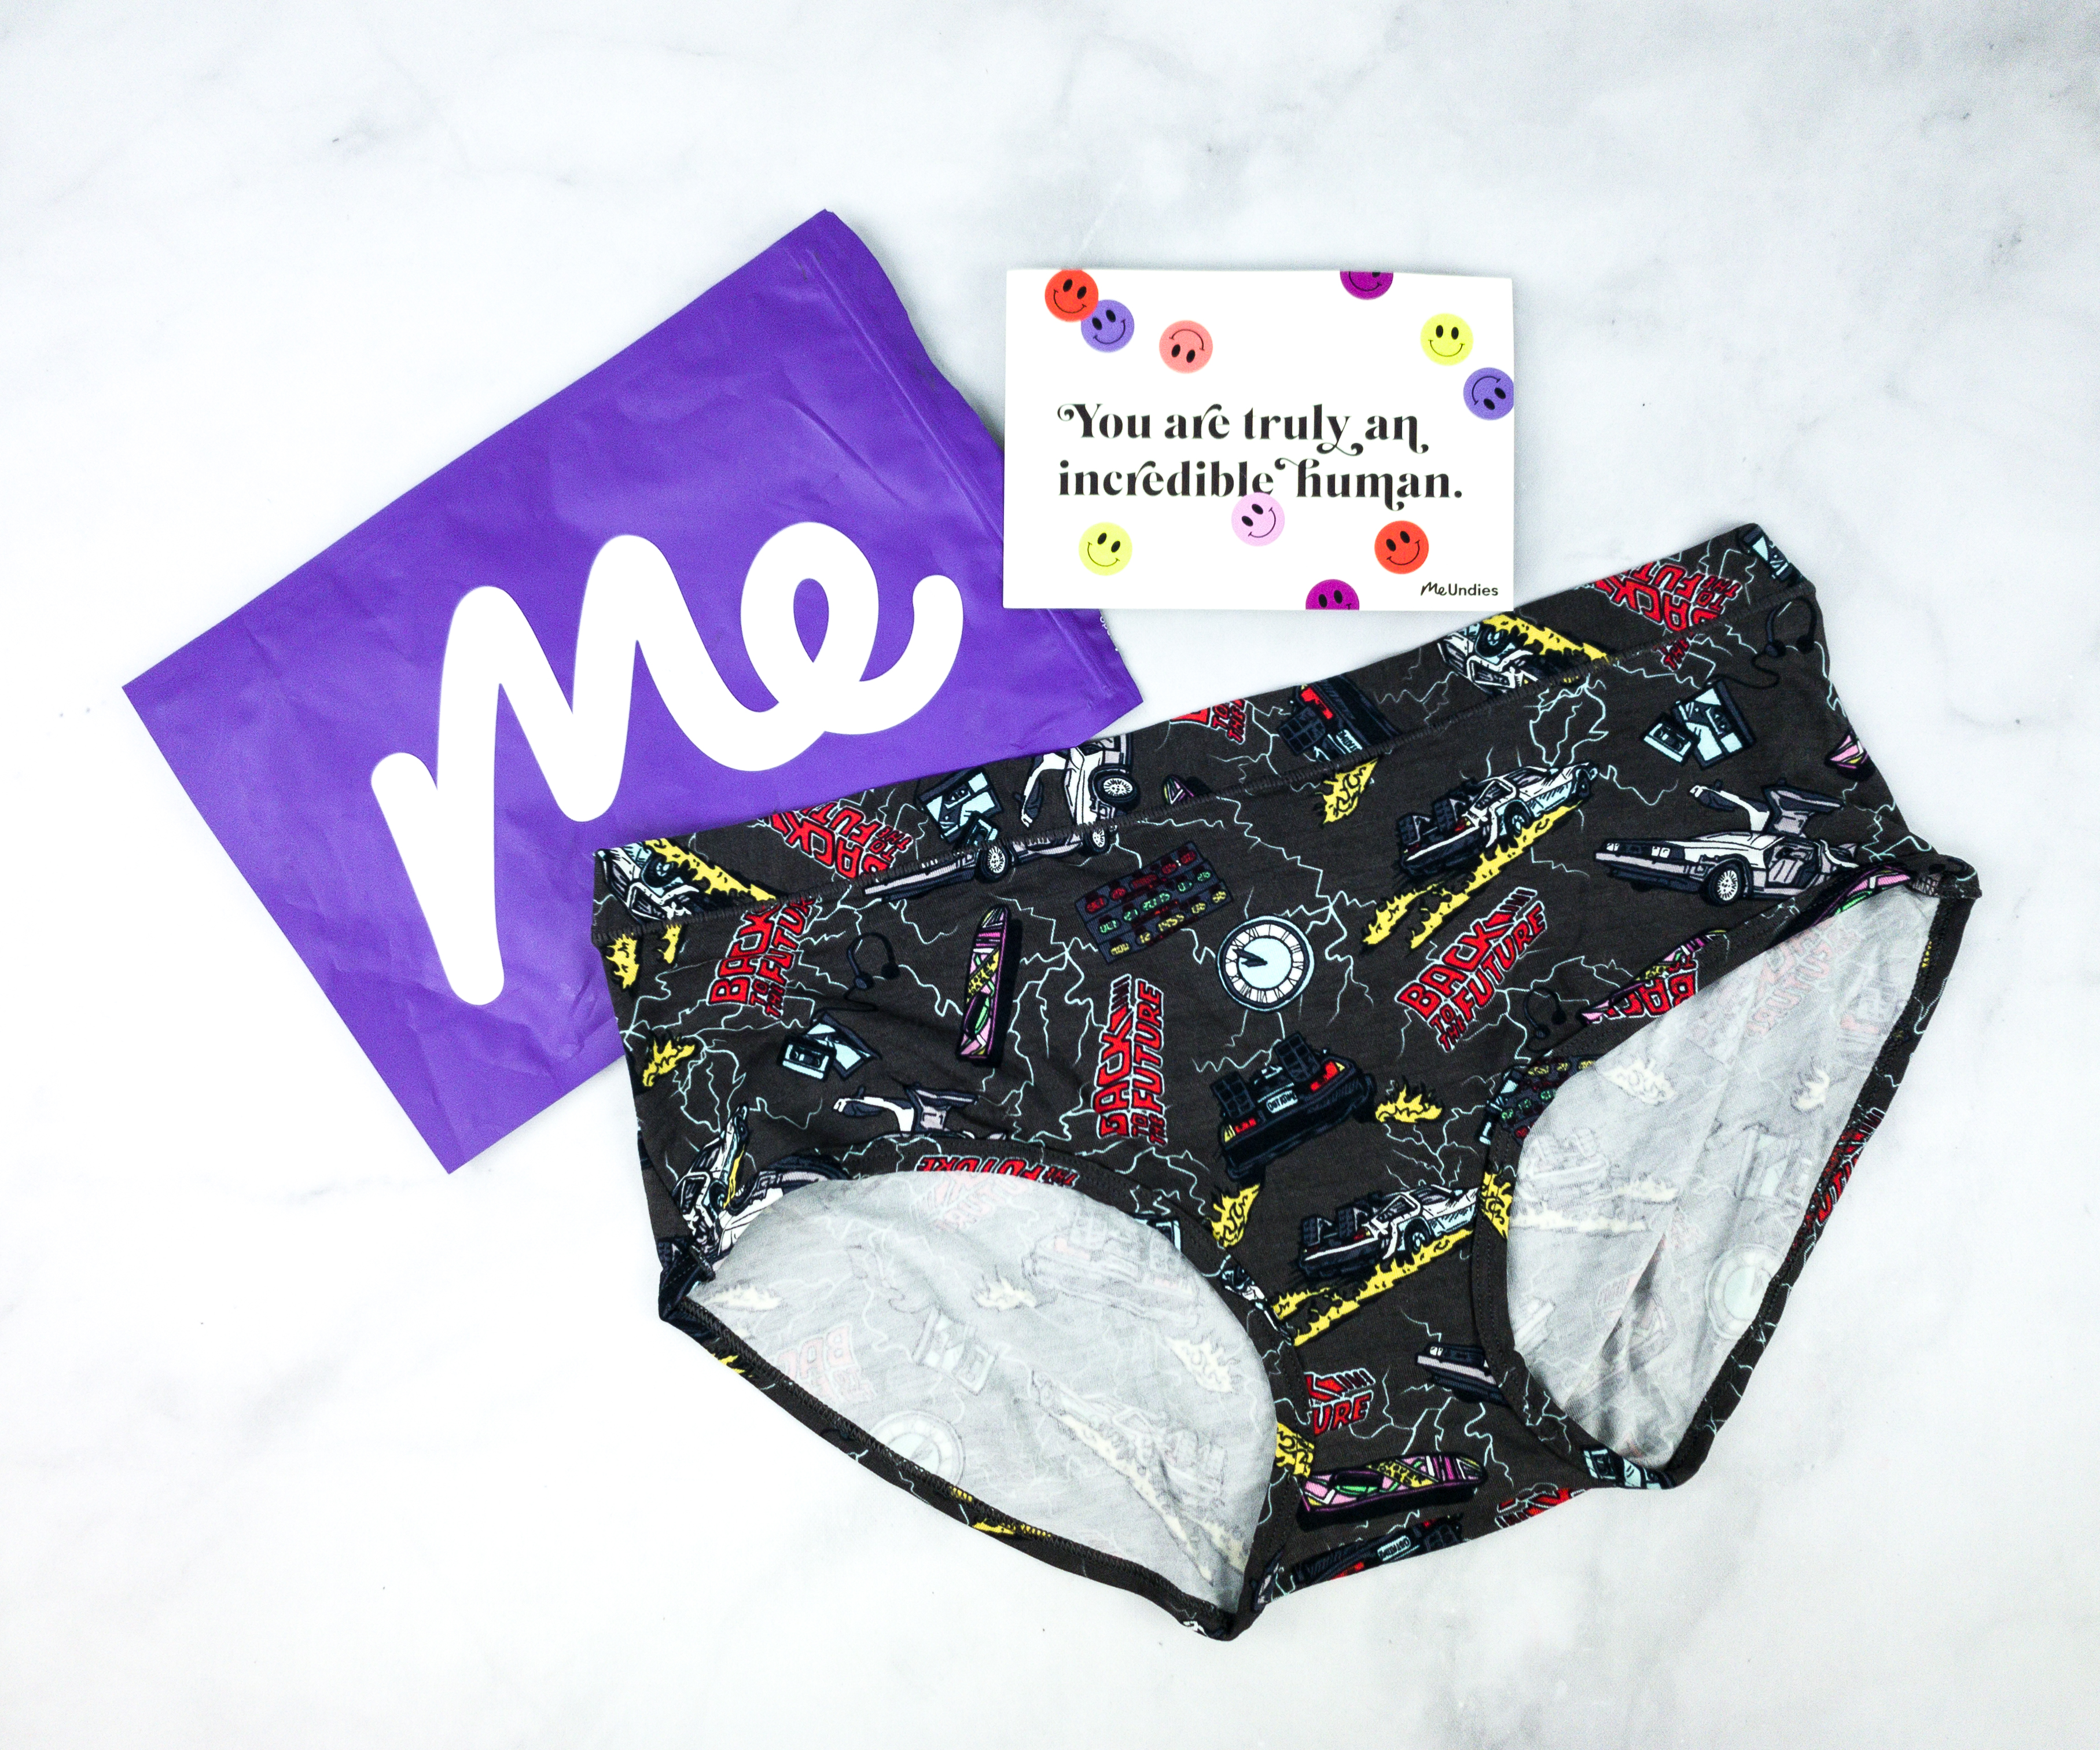 Micromodal Hipster Underwear  Women's Underwear - MeUndies